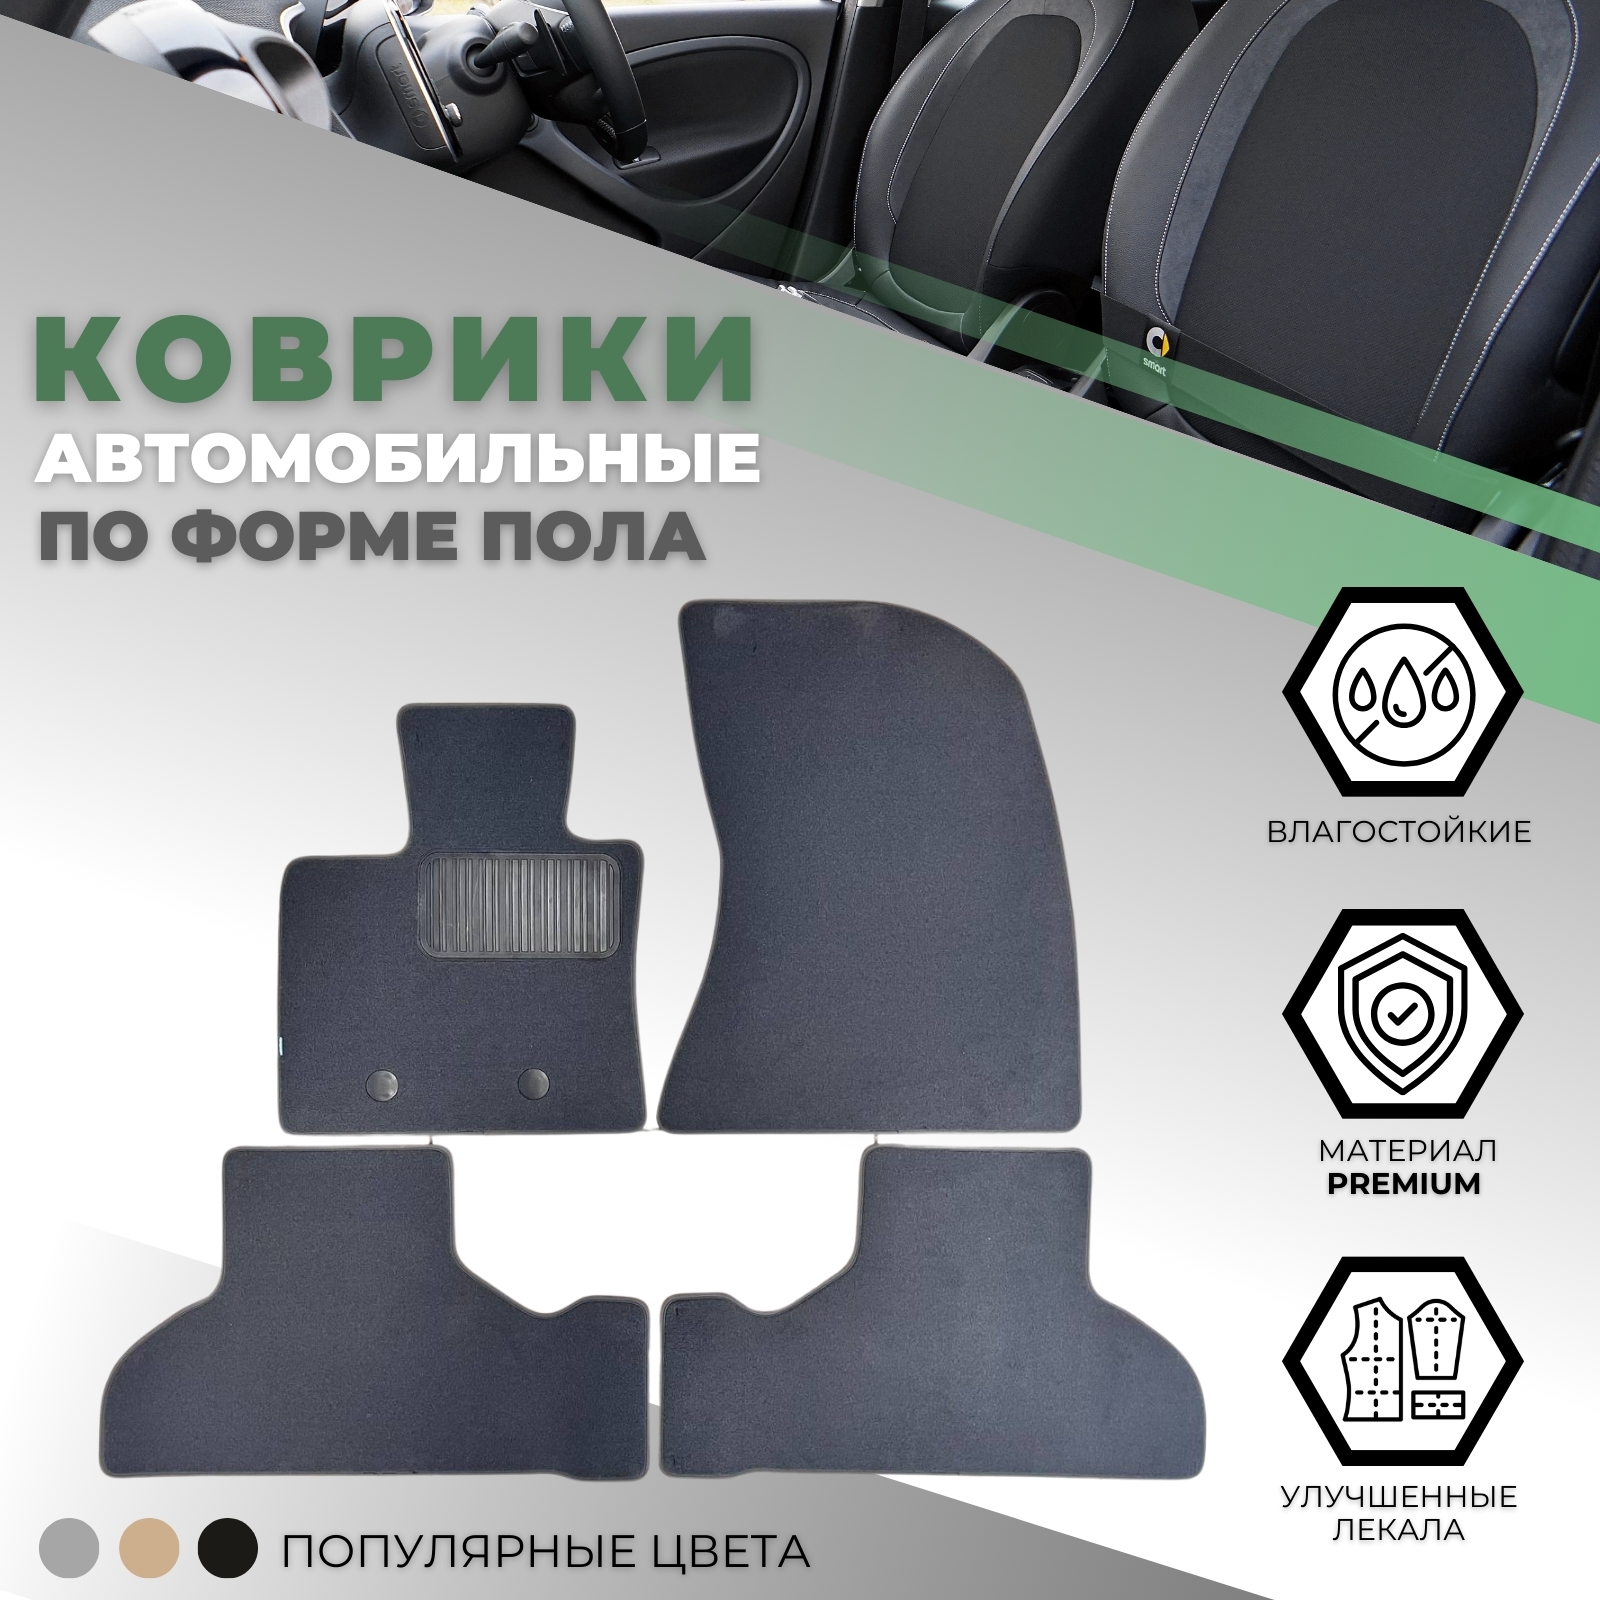 Коврики в салон BMW X5 III (F15) 2013-2018, текстильные Klever premium, Серый, Арт. KVR03053722110kh